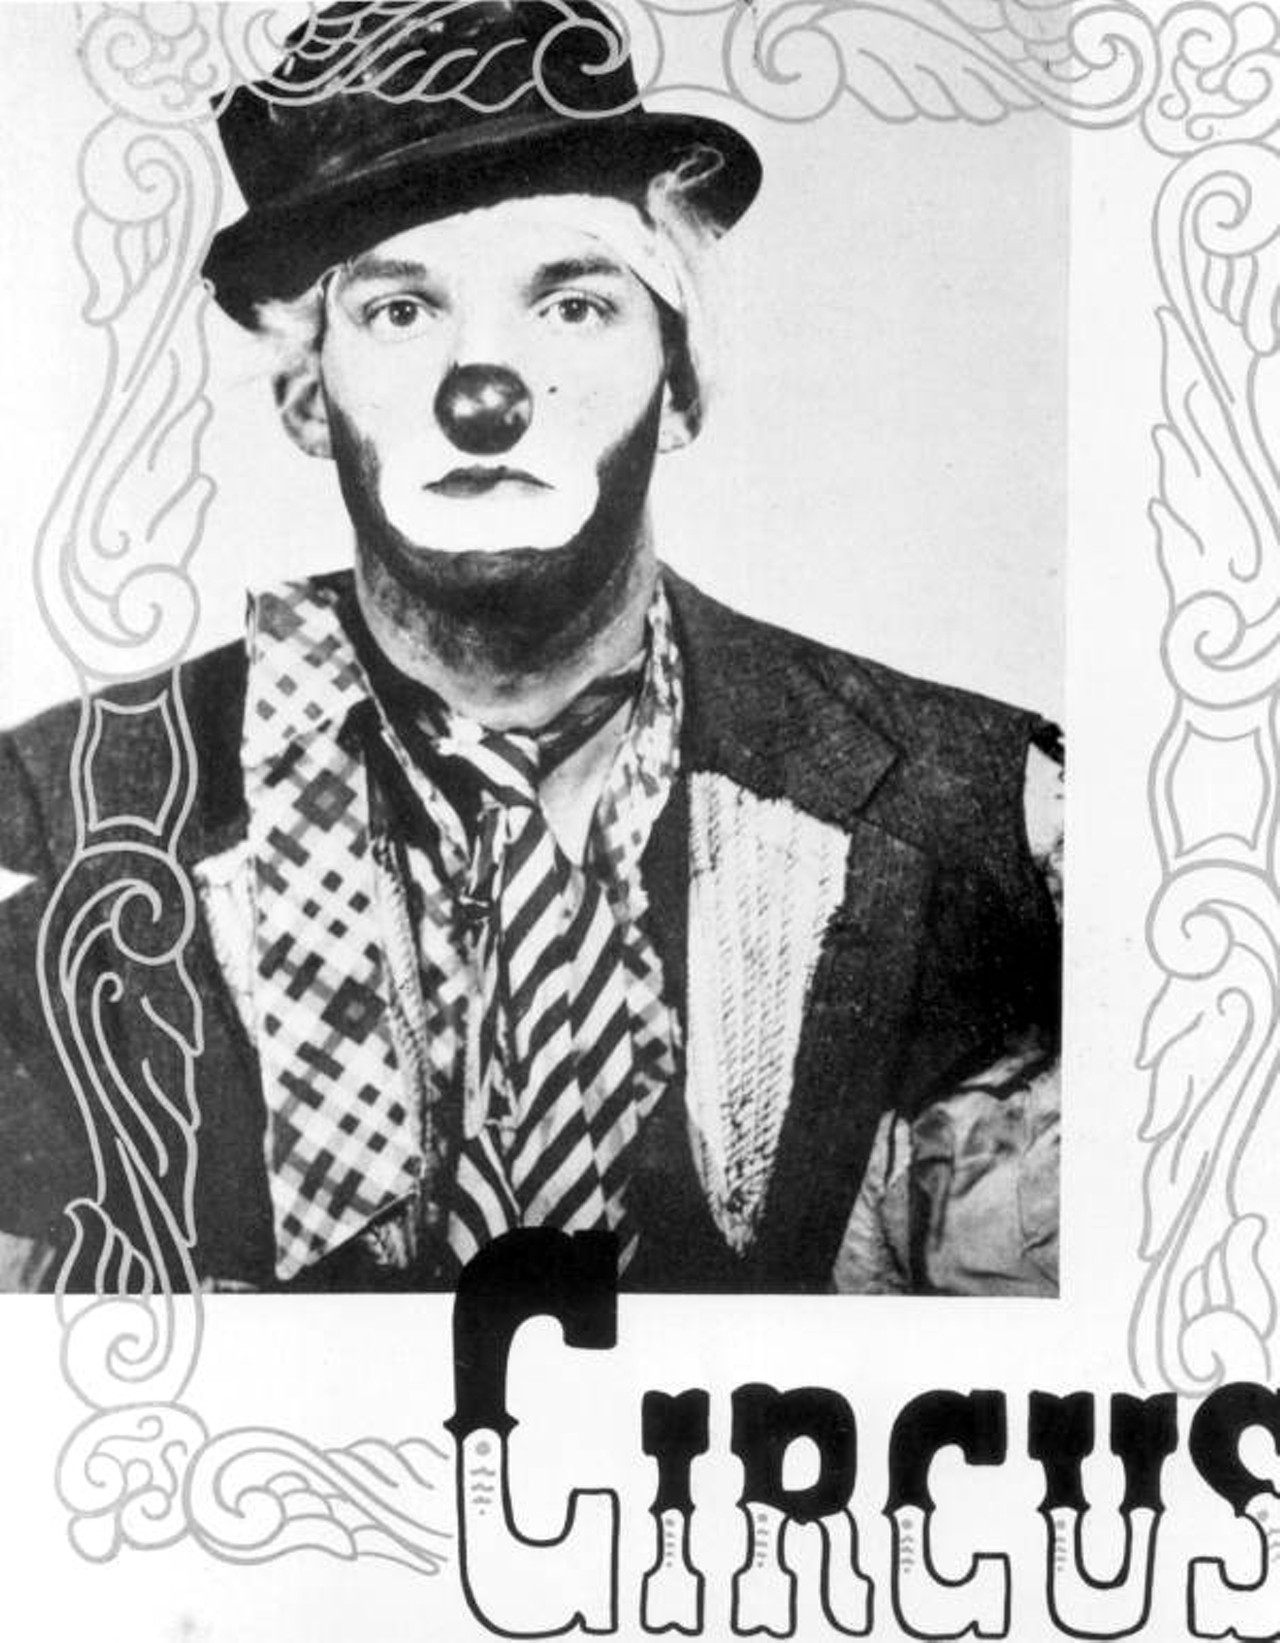 Clown on a poster circa 1948 (via floridamemory.com)